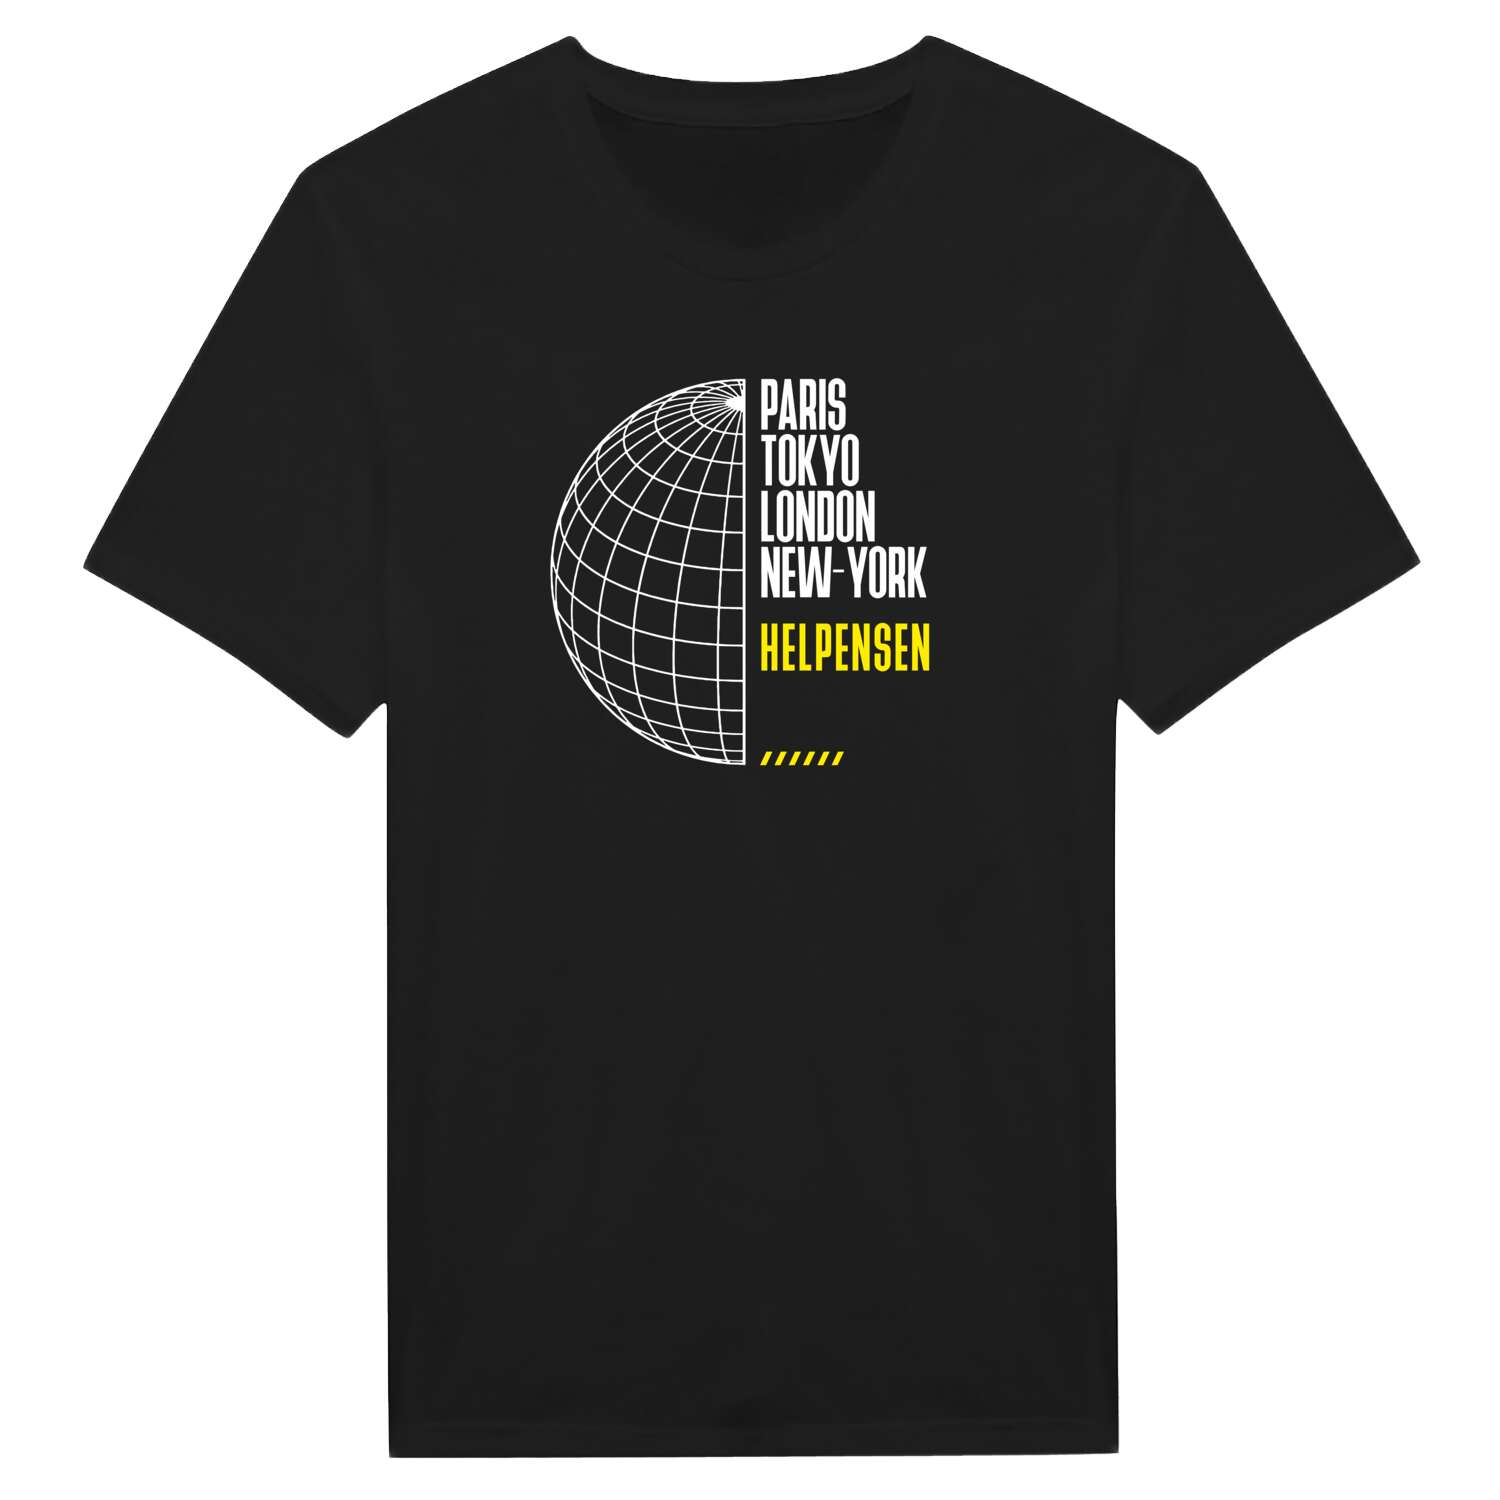 Helpensen T-Shirt »Paris Tokyo London«